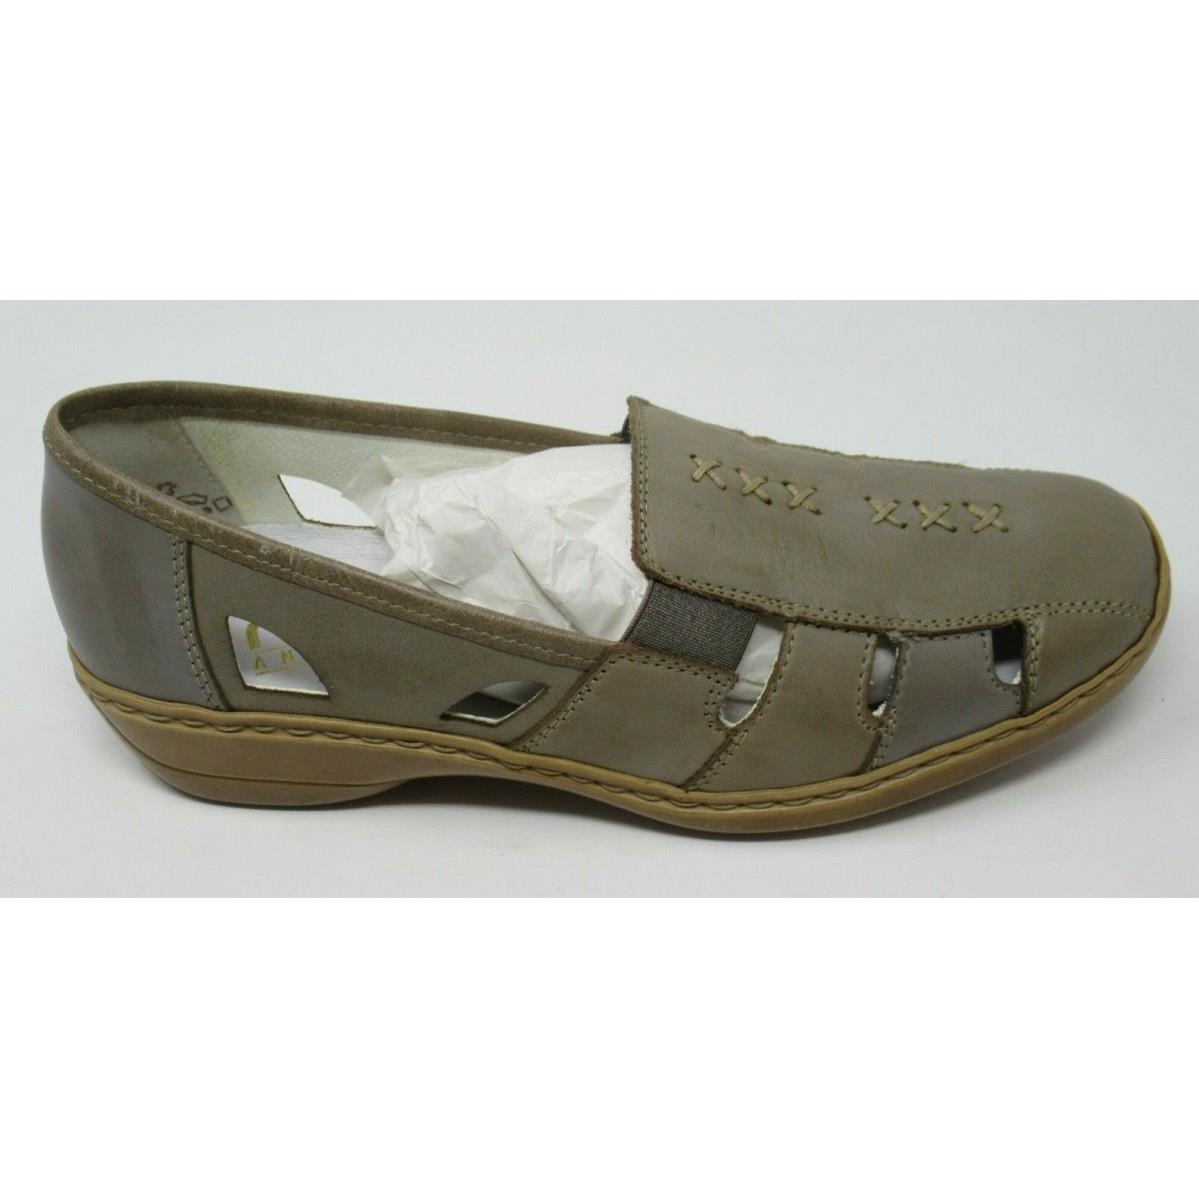 Rieker Women`s 41385 Beige Lea. Slip-on Spring/summer Loafers Shoes SZ 38 US 7